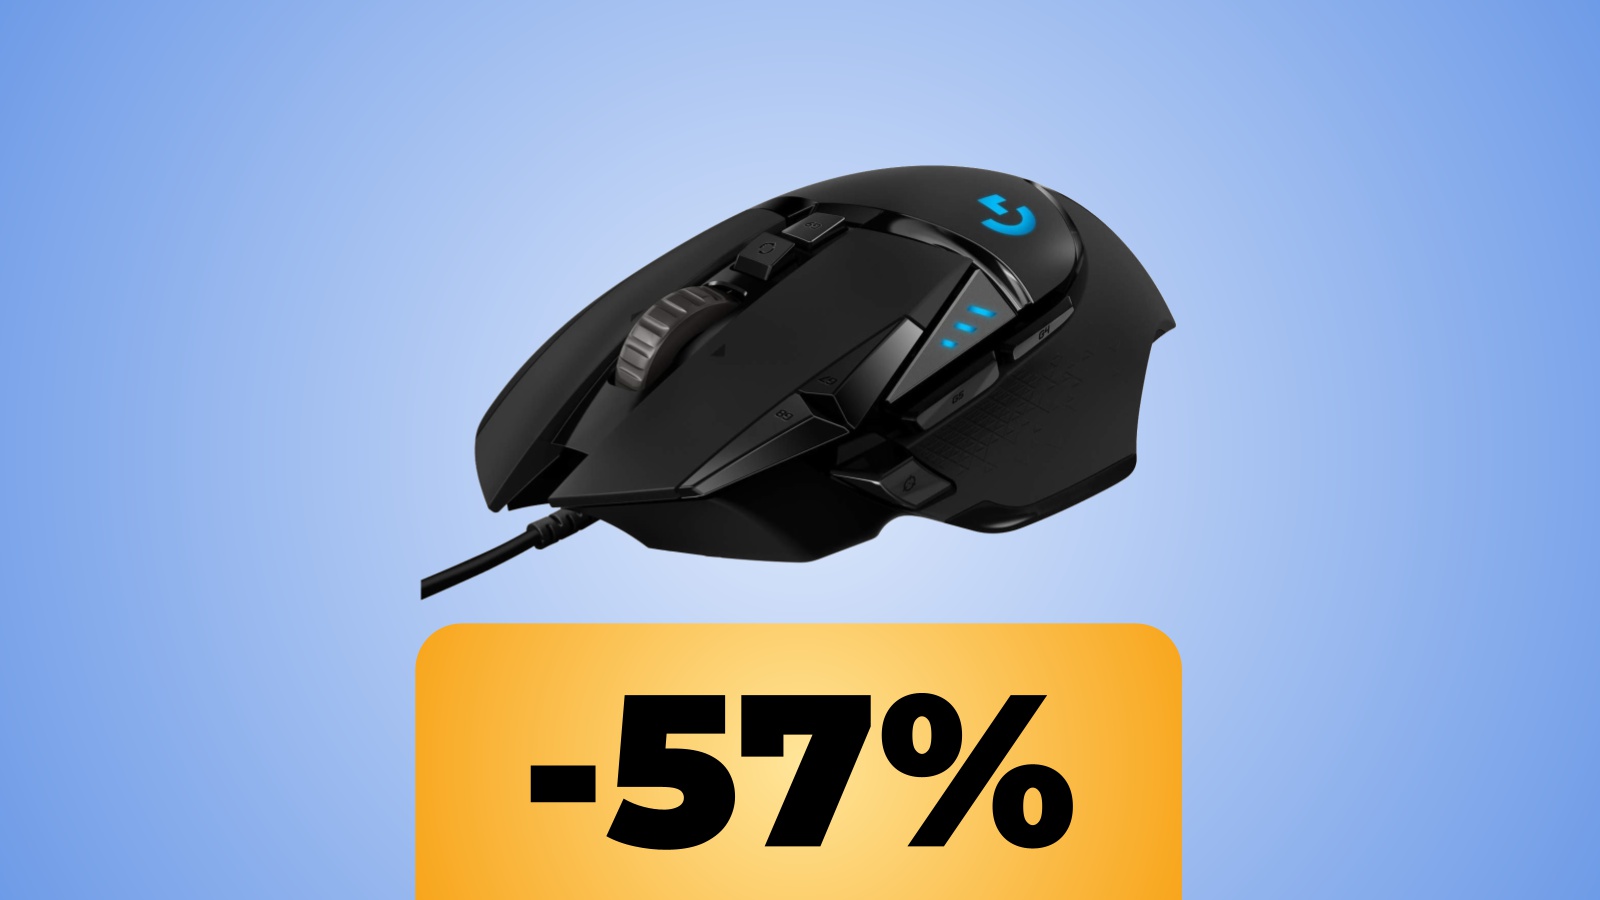 Il mouse da gaming Logitech G502 HERO si trova ora al prezzo minimo storico su Amazon